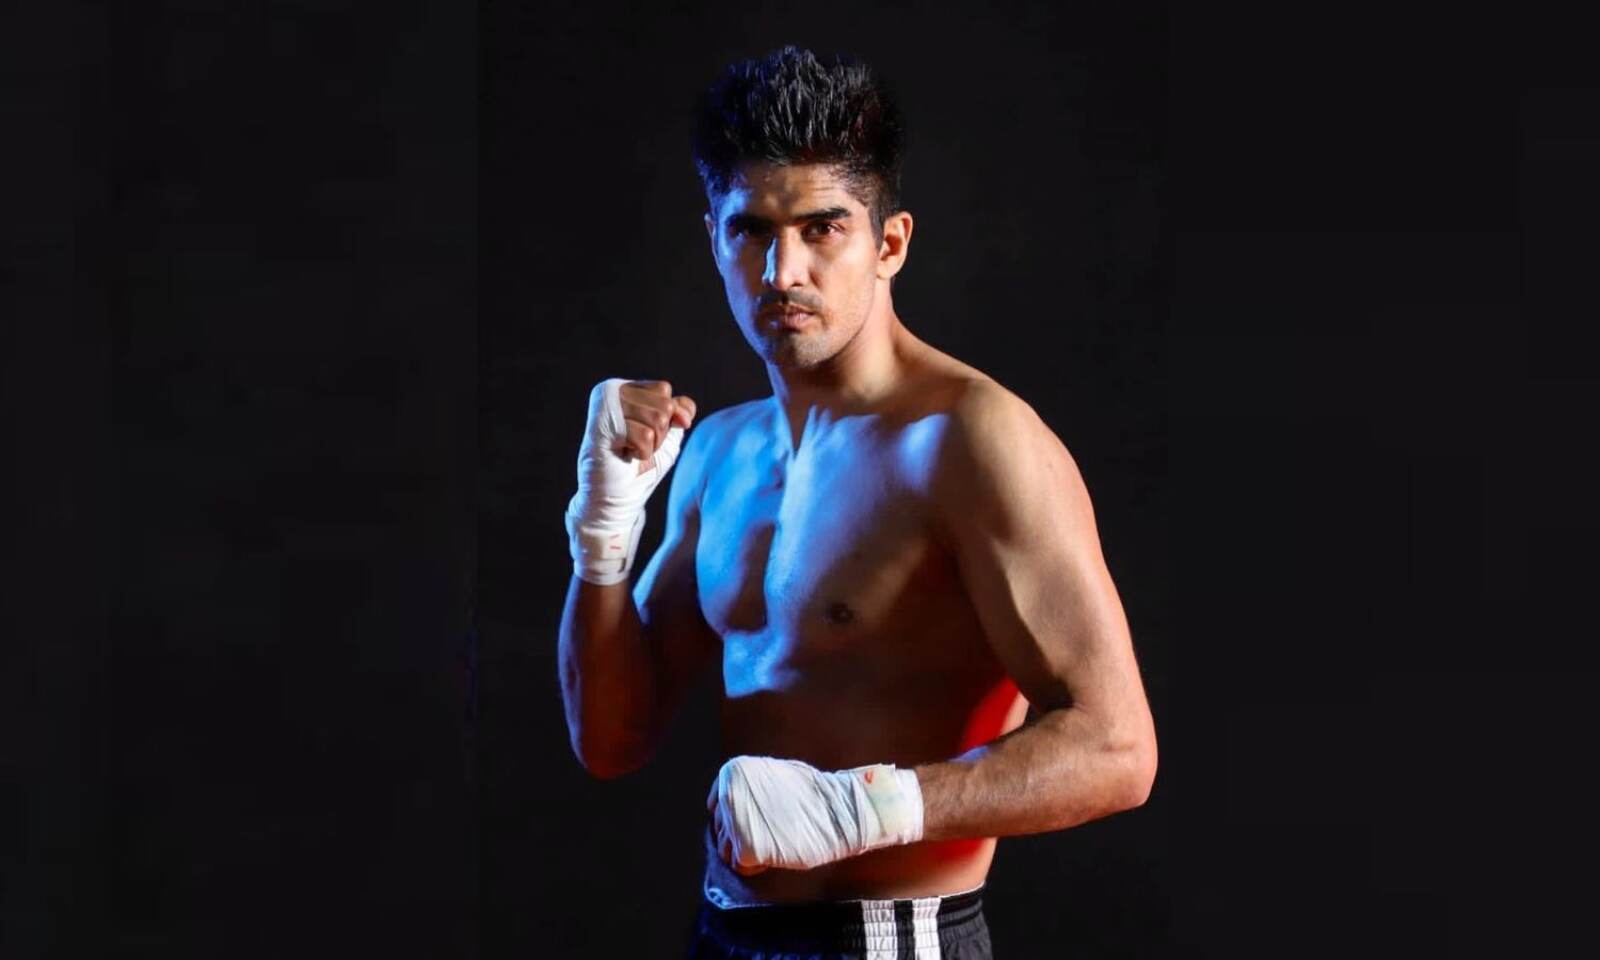 अगस्त में रायपुर में होगी विजेंदर सिंह की प्रोफेशनल फाईट, डेढ़ साल बाद लड़ेंगे देश में फाईट | Vijender Singh set for August return at first pro boxing event in Raipur